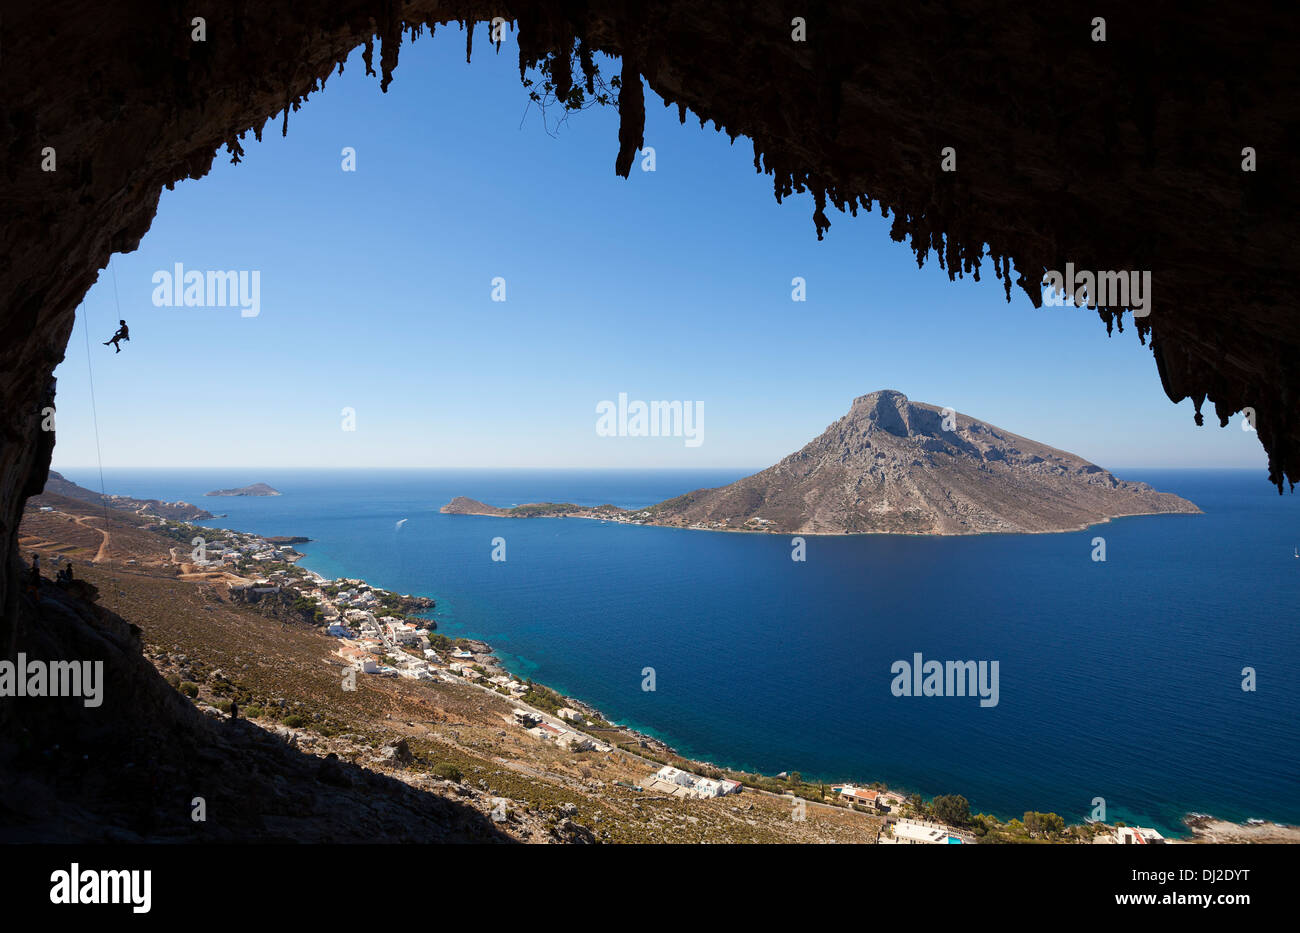 L'escalade de rocher, l'île de Kalymnos, Grèce Banque D'Images